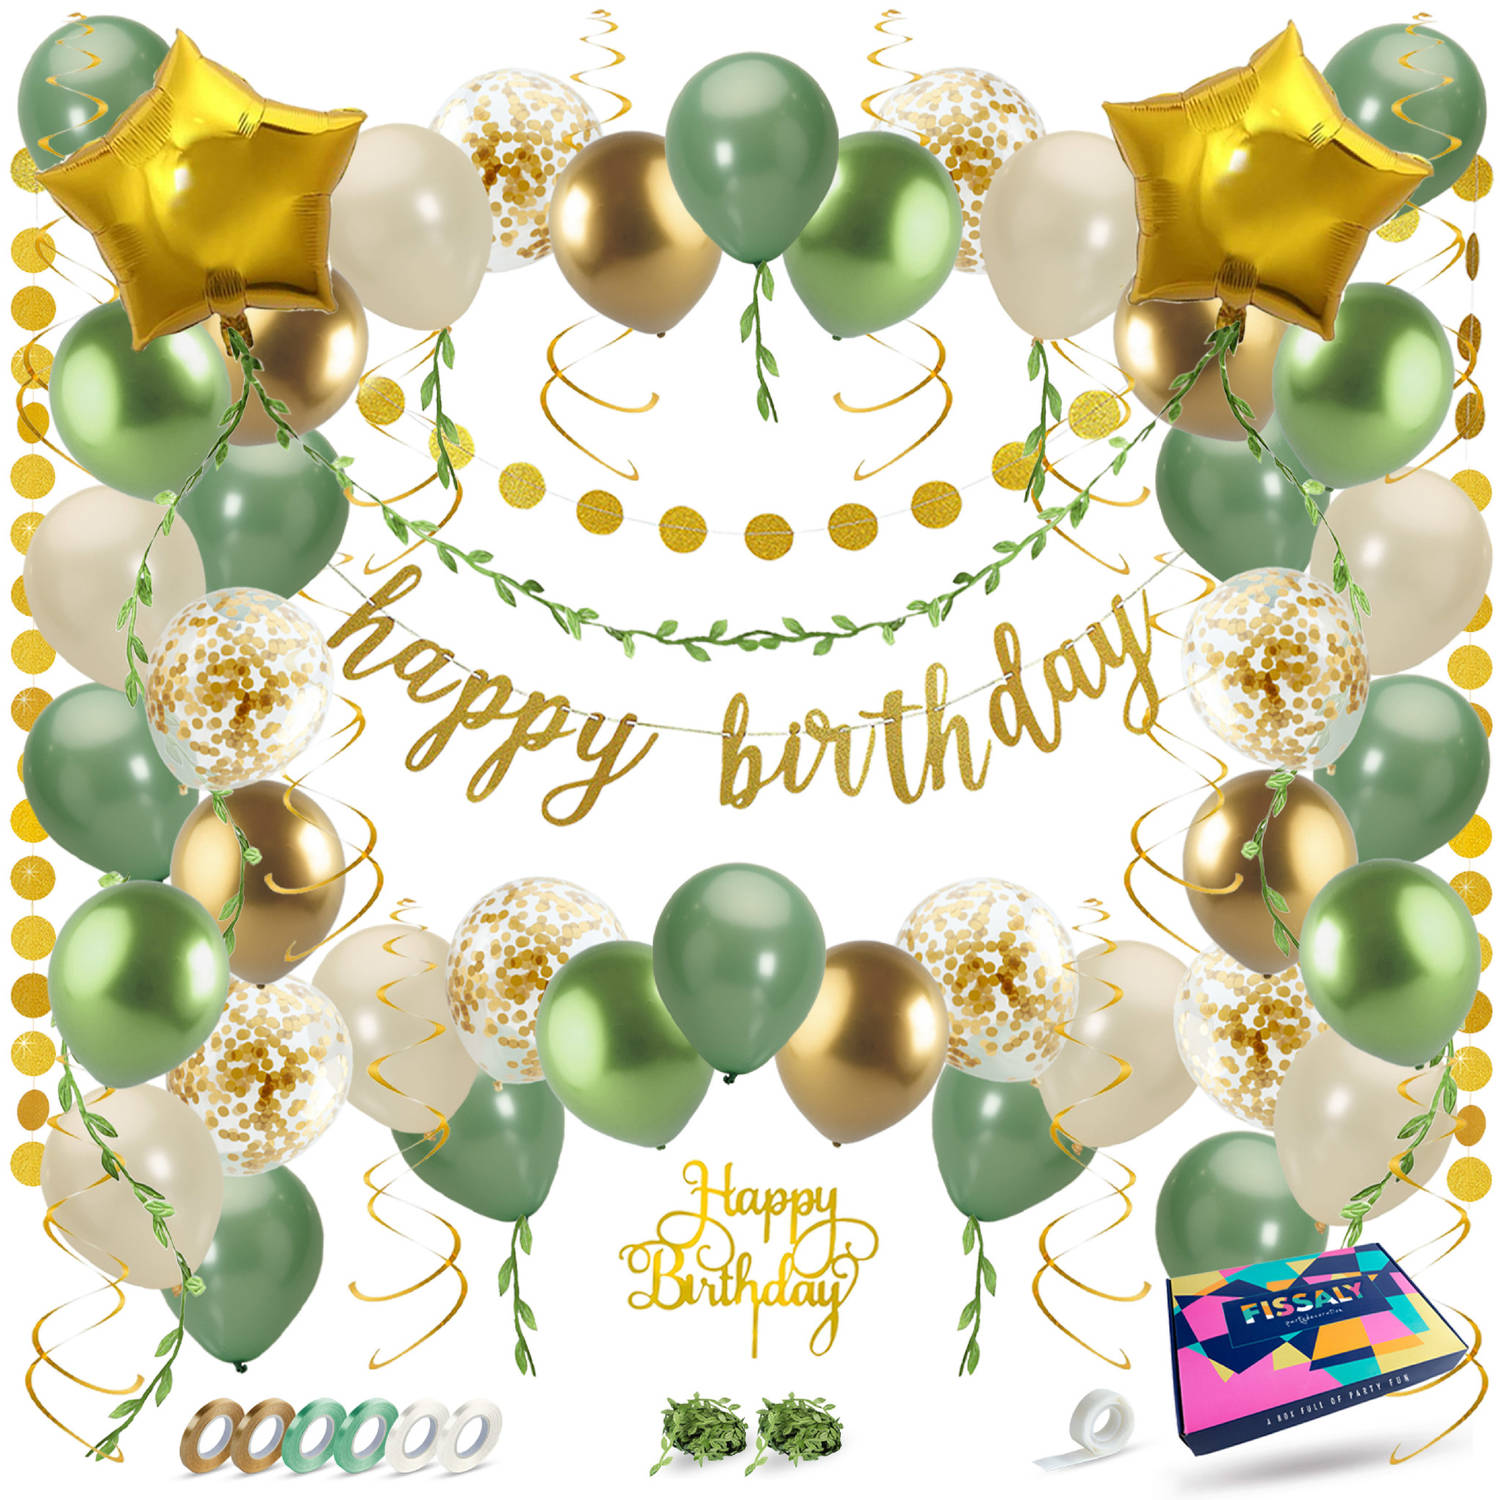 Fissaly® Happy Birthday Verjaardag Feestpakket Groen, Goud & Beige - Papieren Confetti Ballonnen - Decoratie Versiering